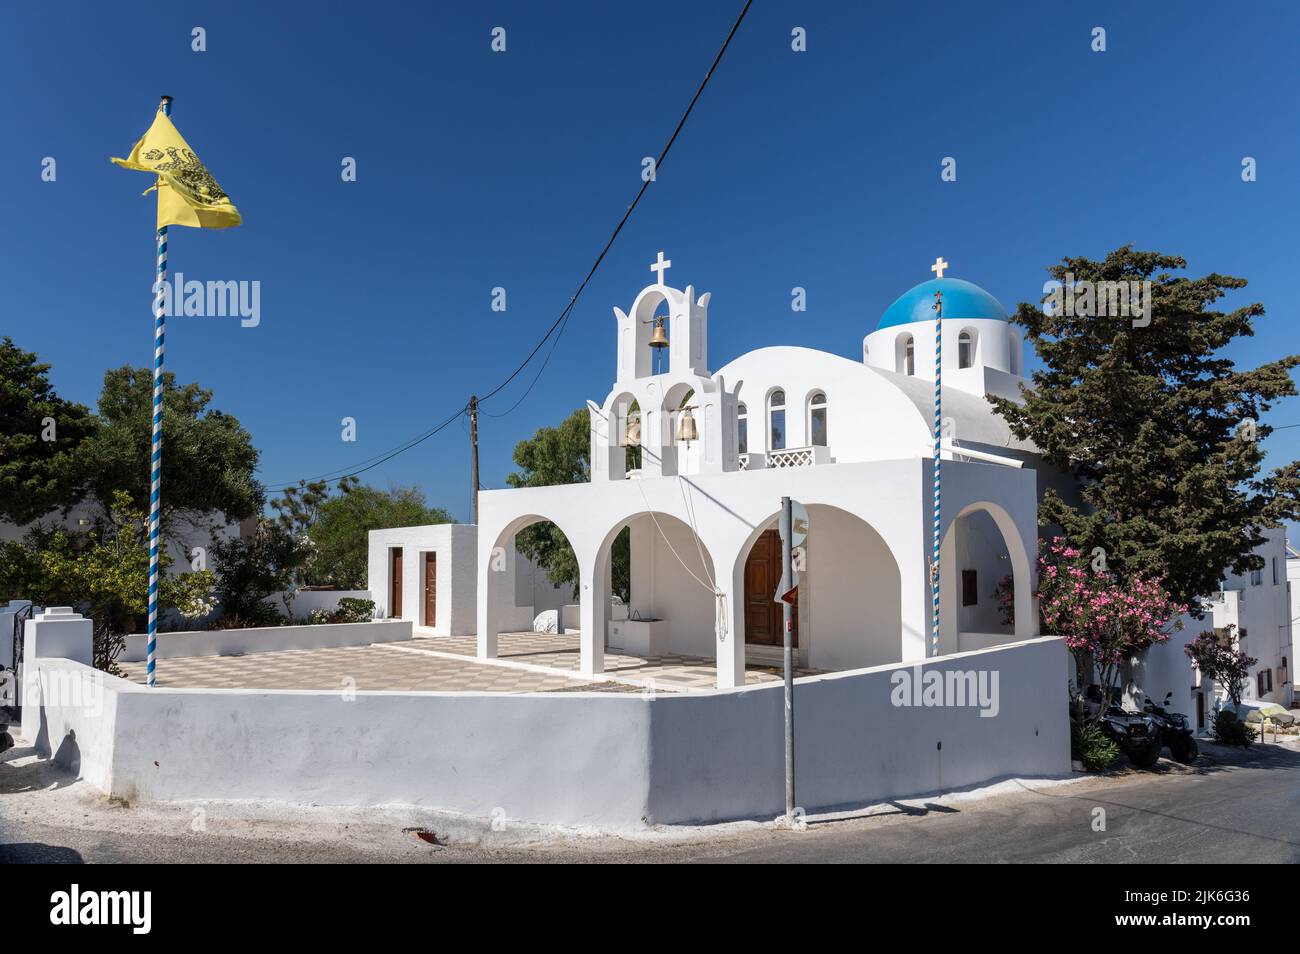 Iglesia de la Resurrección del Señor. Una iglesia ortodoxa griega con una cúpula azul y campanario con 3 campanas, pueblo Imerovigli, Thira, Santorini Foto de stock